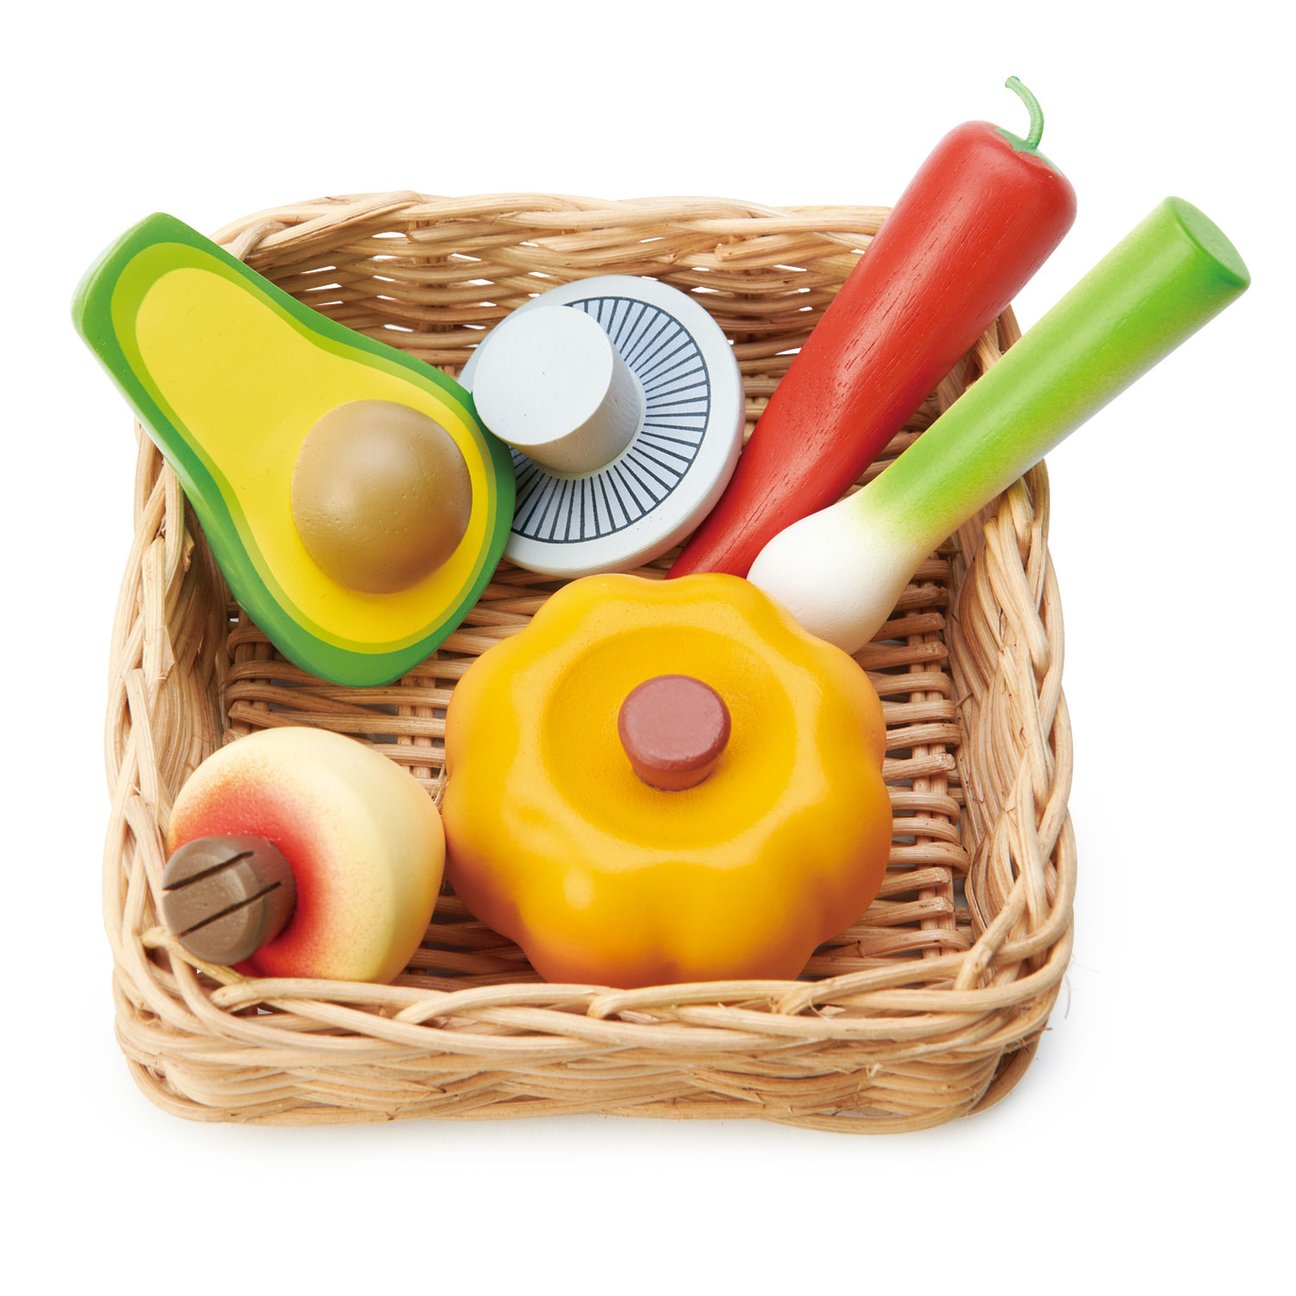 Tender Leaf Toys Play Food Veggie Basket